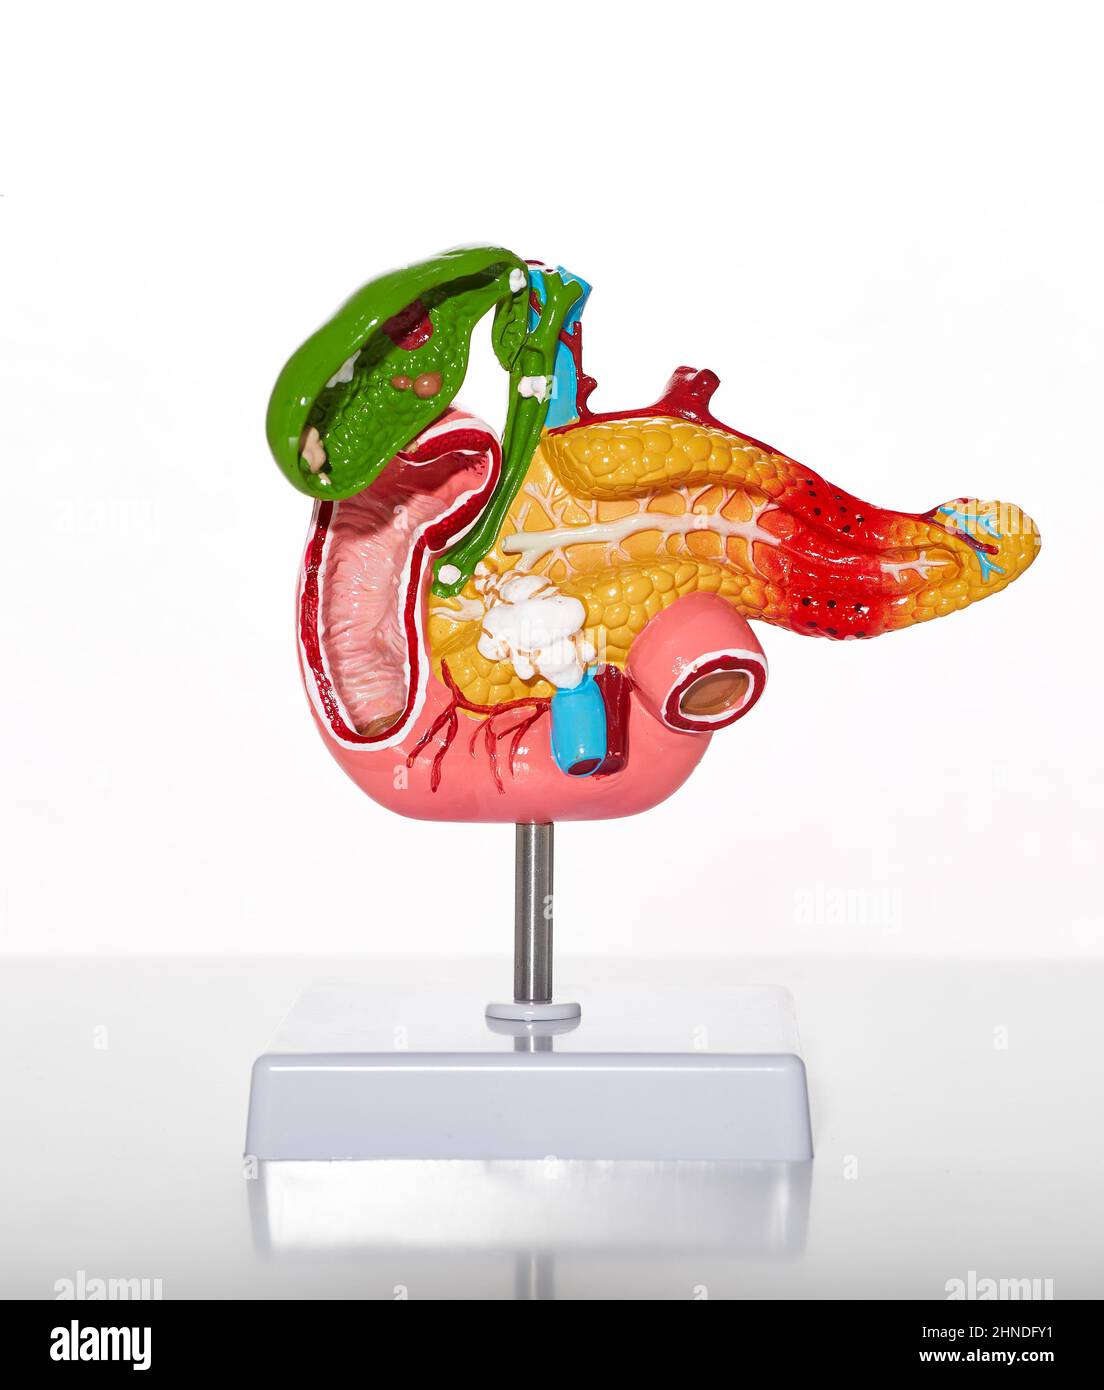 Anatomisches Modell der menschlichen Bauchspeicheldrüse und Gallenblase mit Pathologien und Krankheiten für medizinische und biologische Bildung, Nahaufnahme Stockfoto